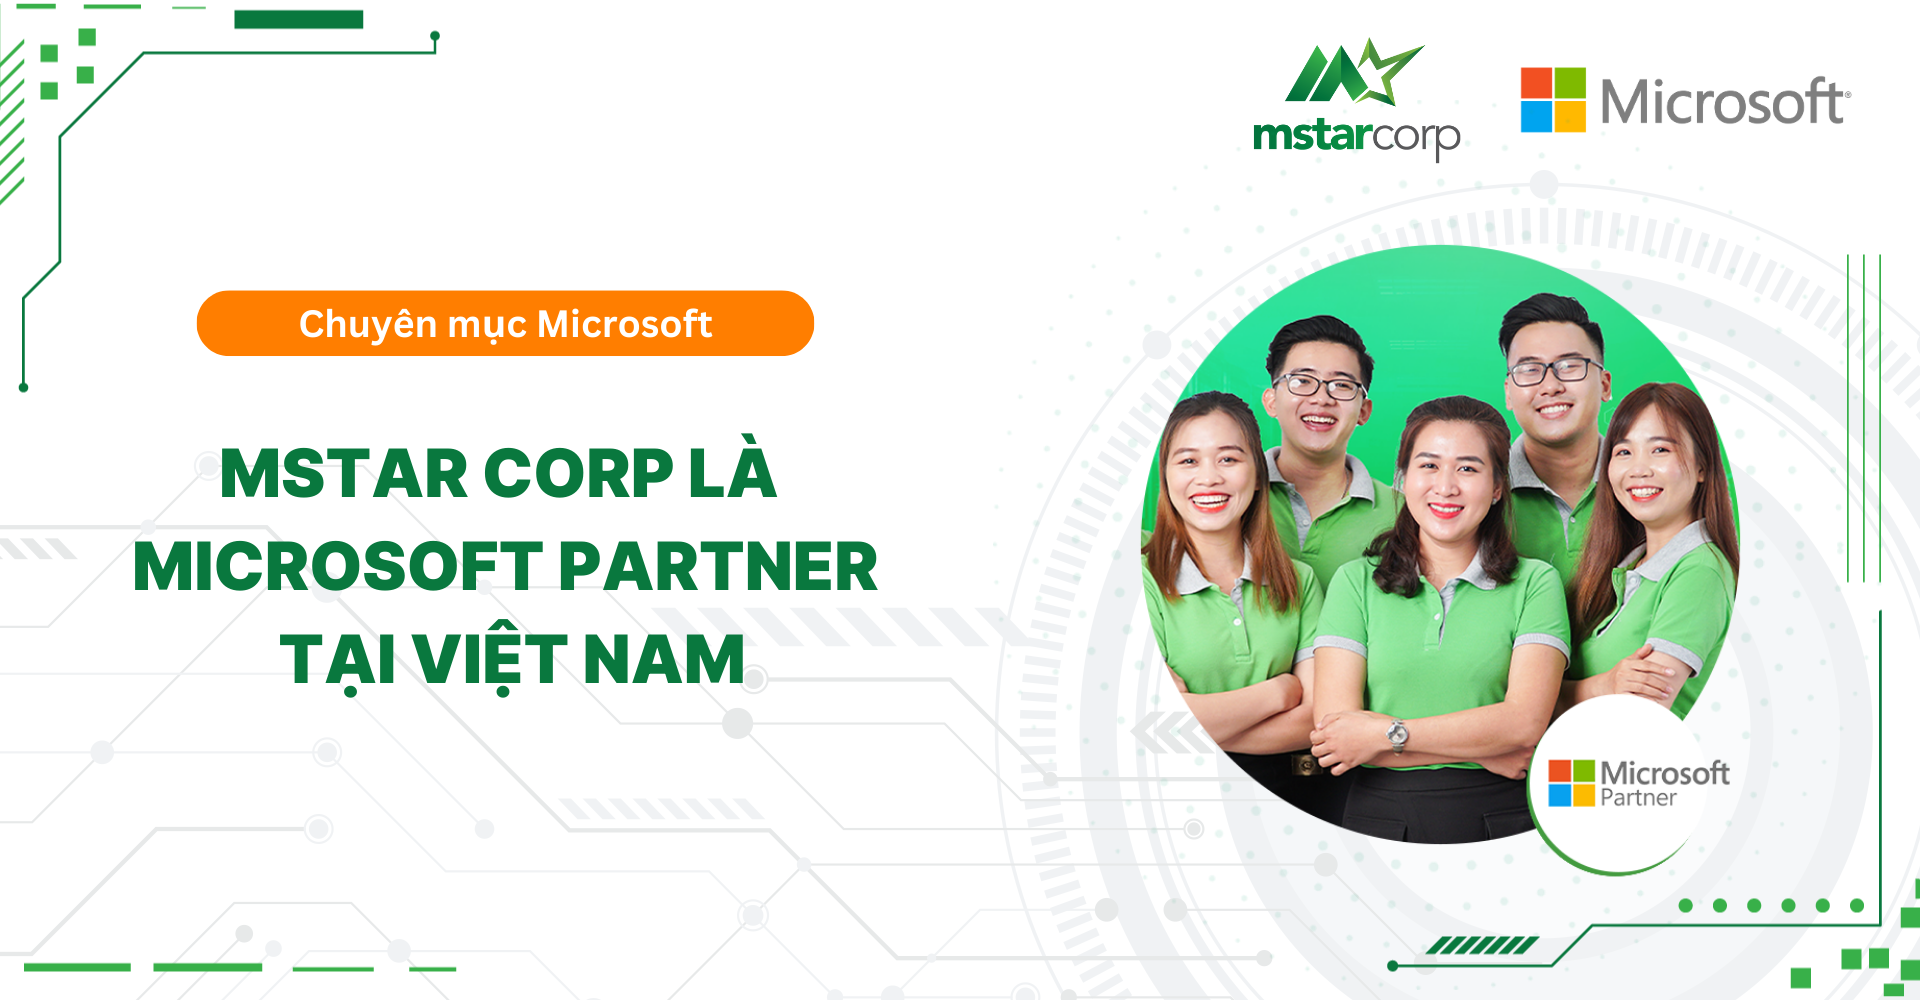 Mstar Corp là Microsoft Partner tại Việt Nam